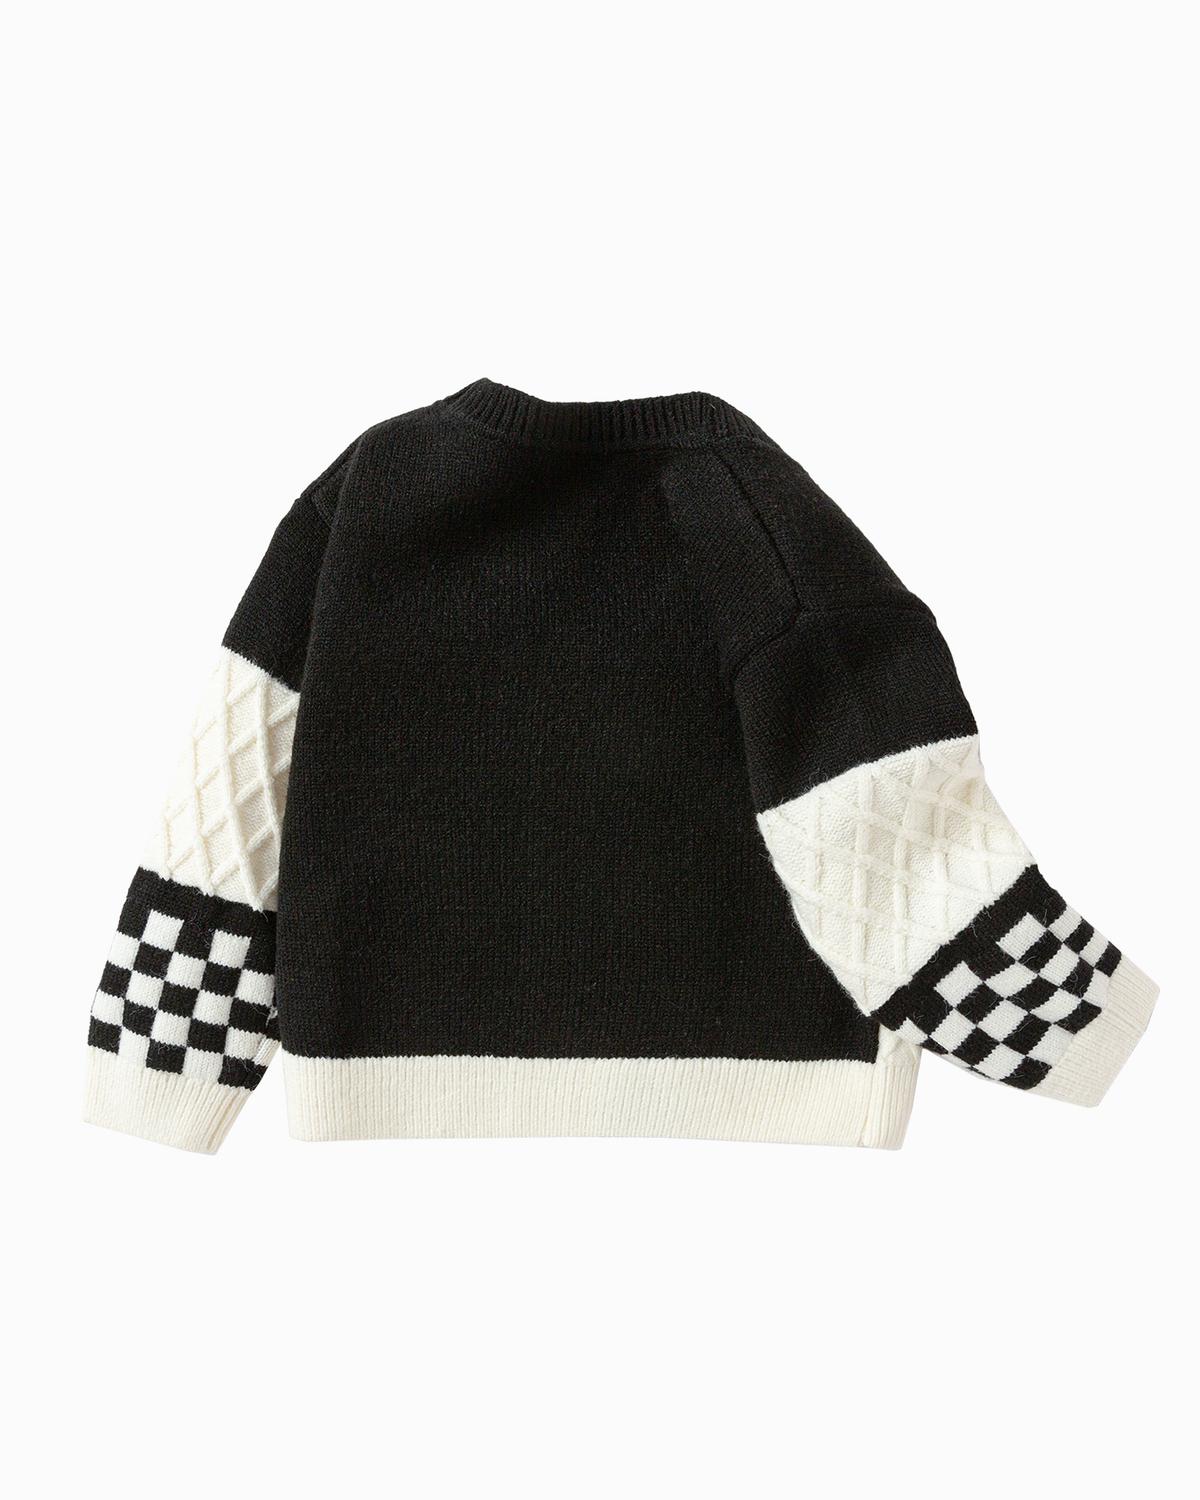 Balabala Toddler Boy Black Hue Sweater